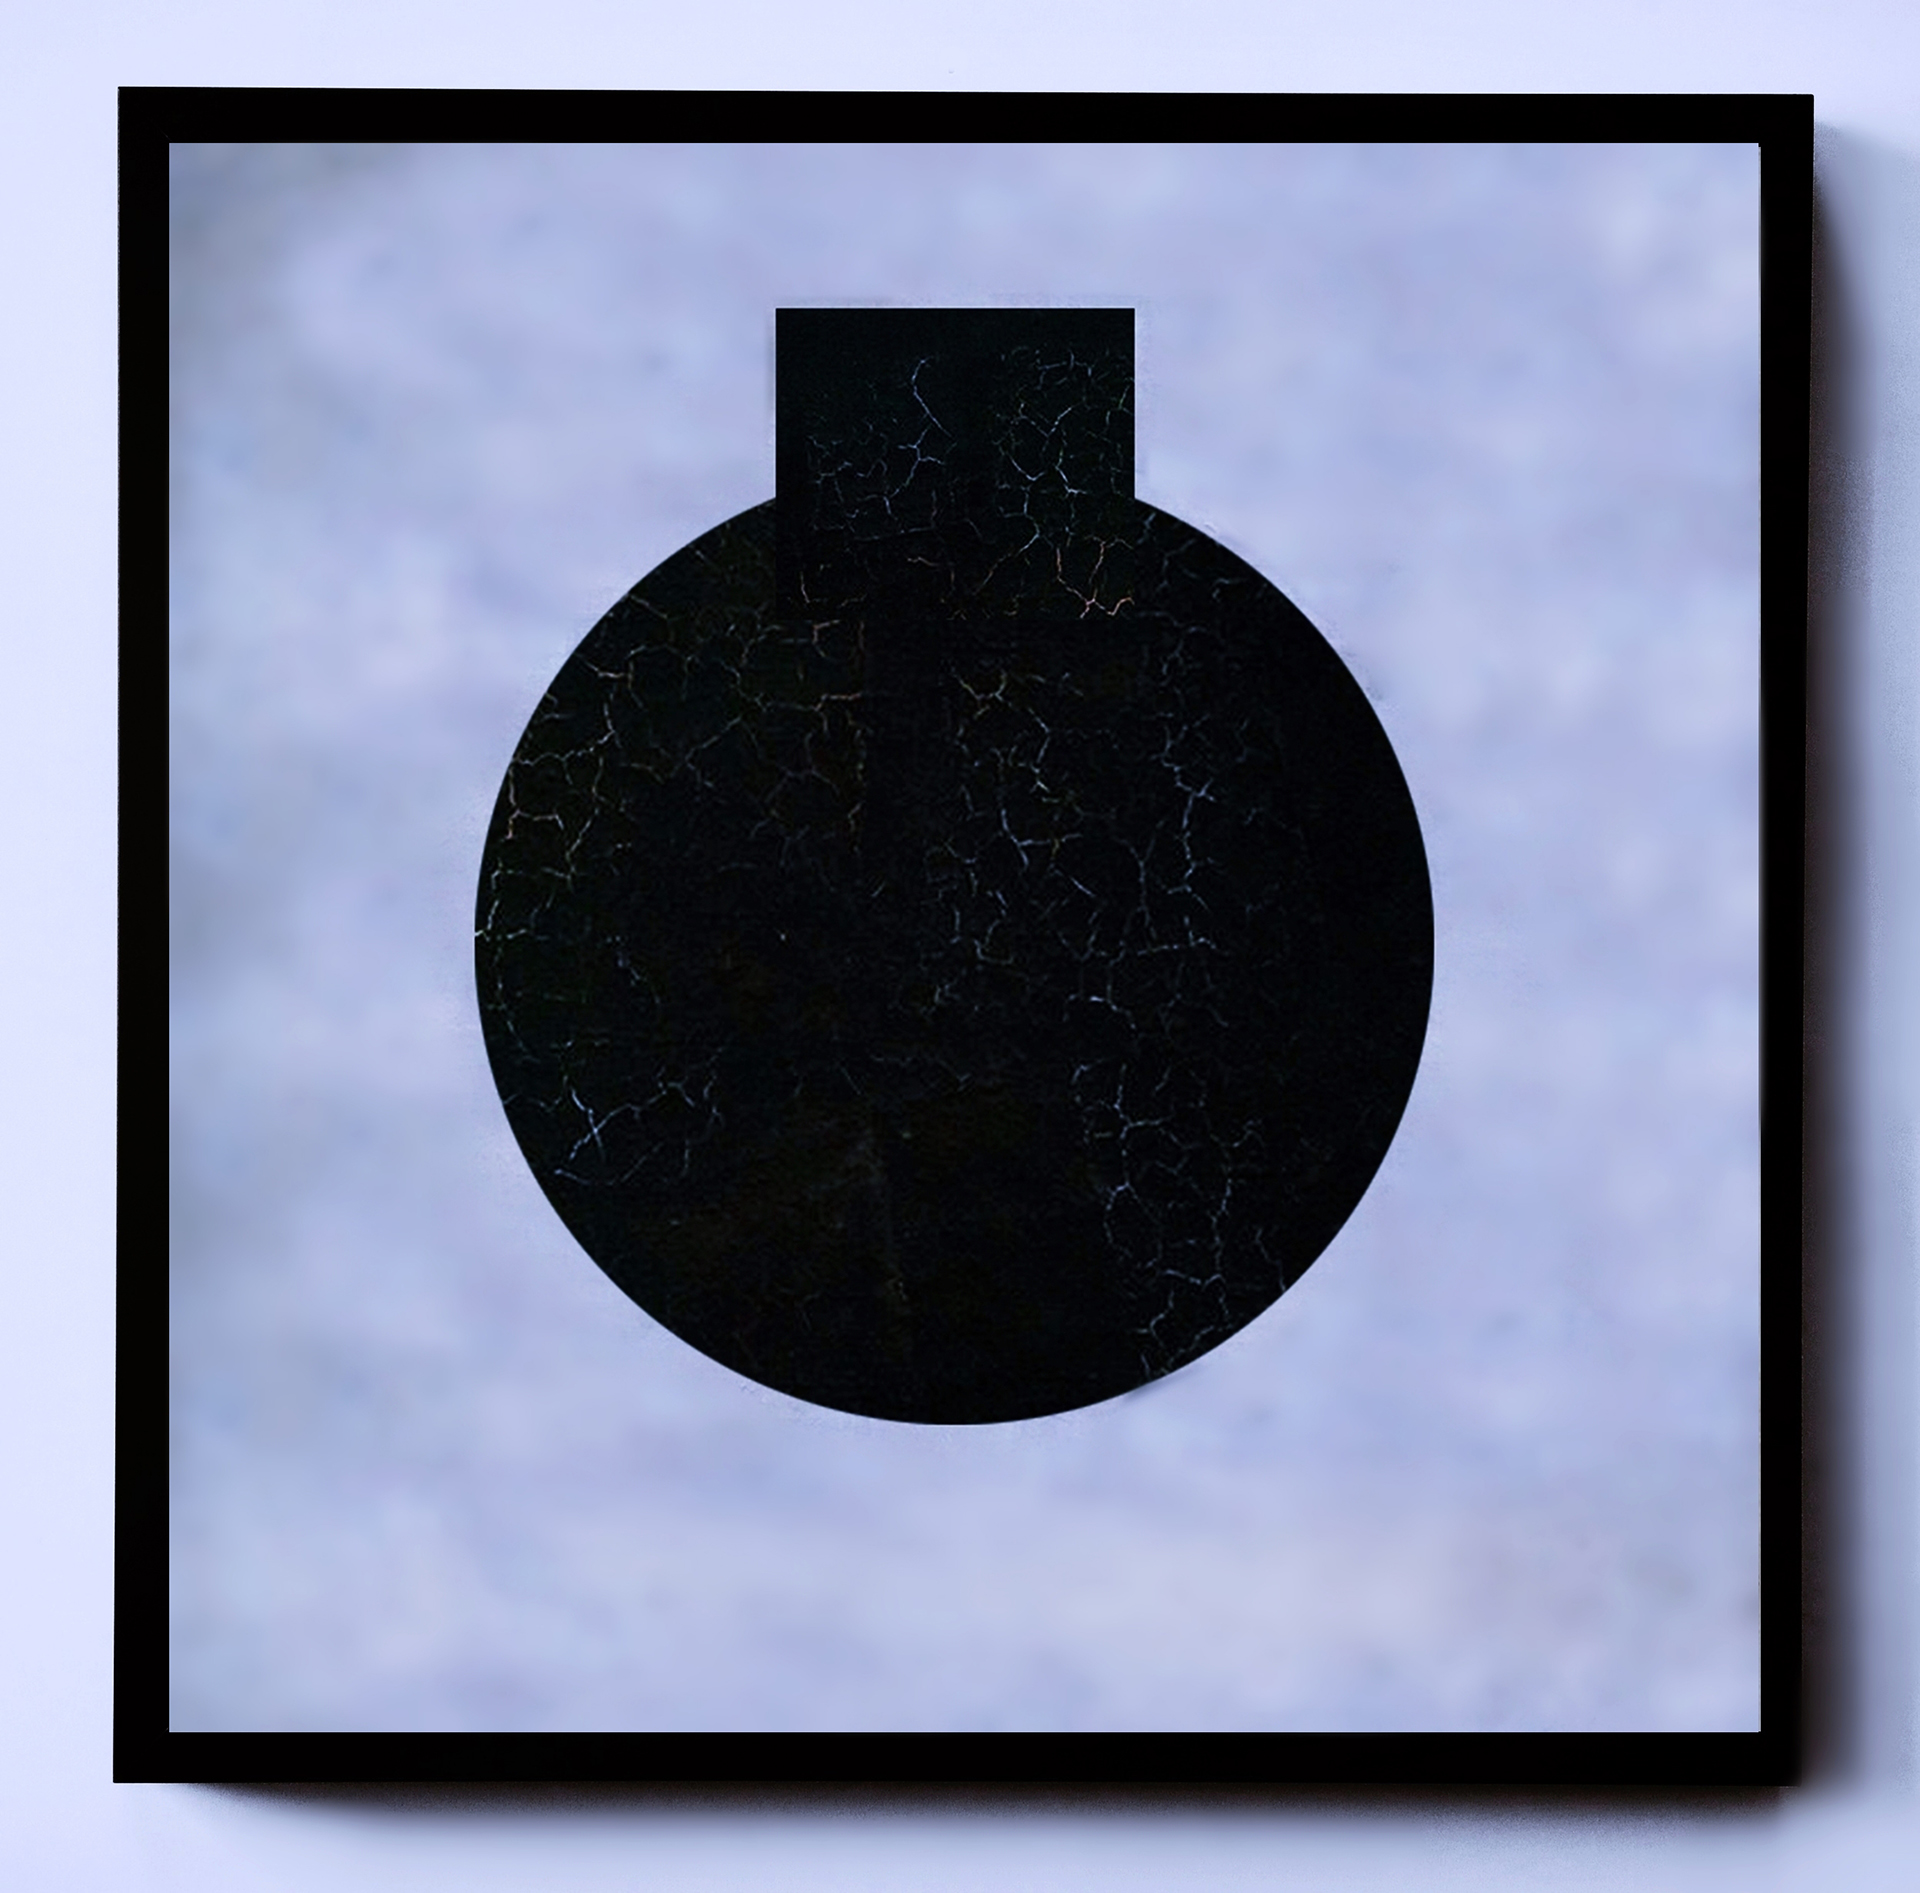 Abstrakcyjna kompozycja graficzna ukazująca czarne koło z dodanym czarnym elementem prostokątnym (układ  form kojarzący się z budowlą na planie centralnym) na błękitnym tle aluzyjnie przypominającym motyw nieba.  	